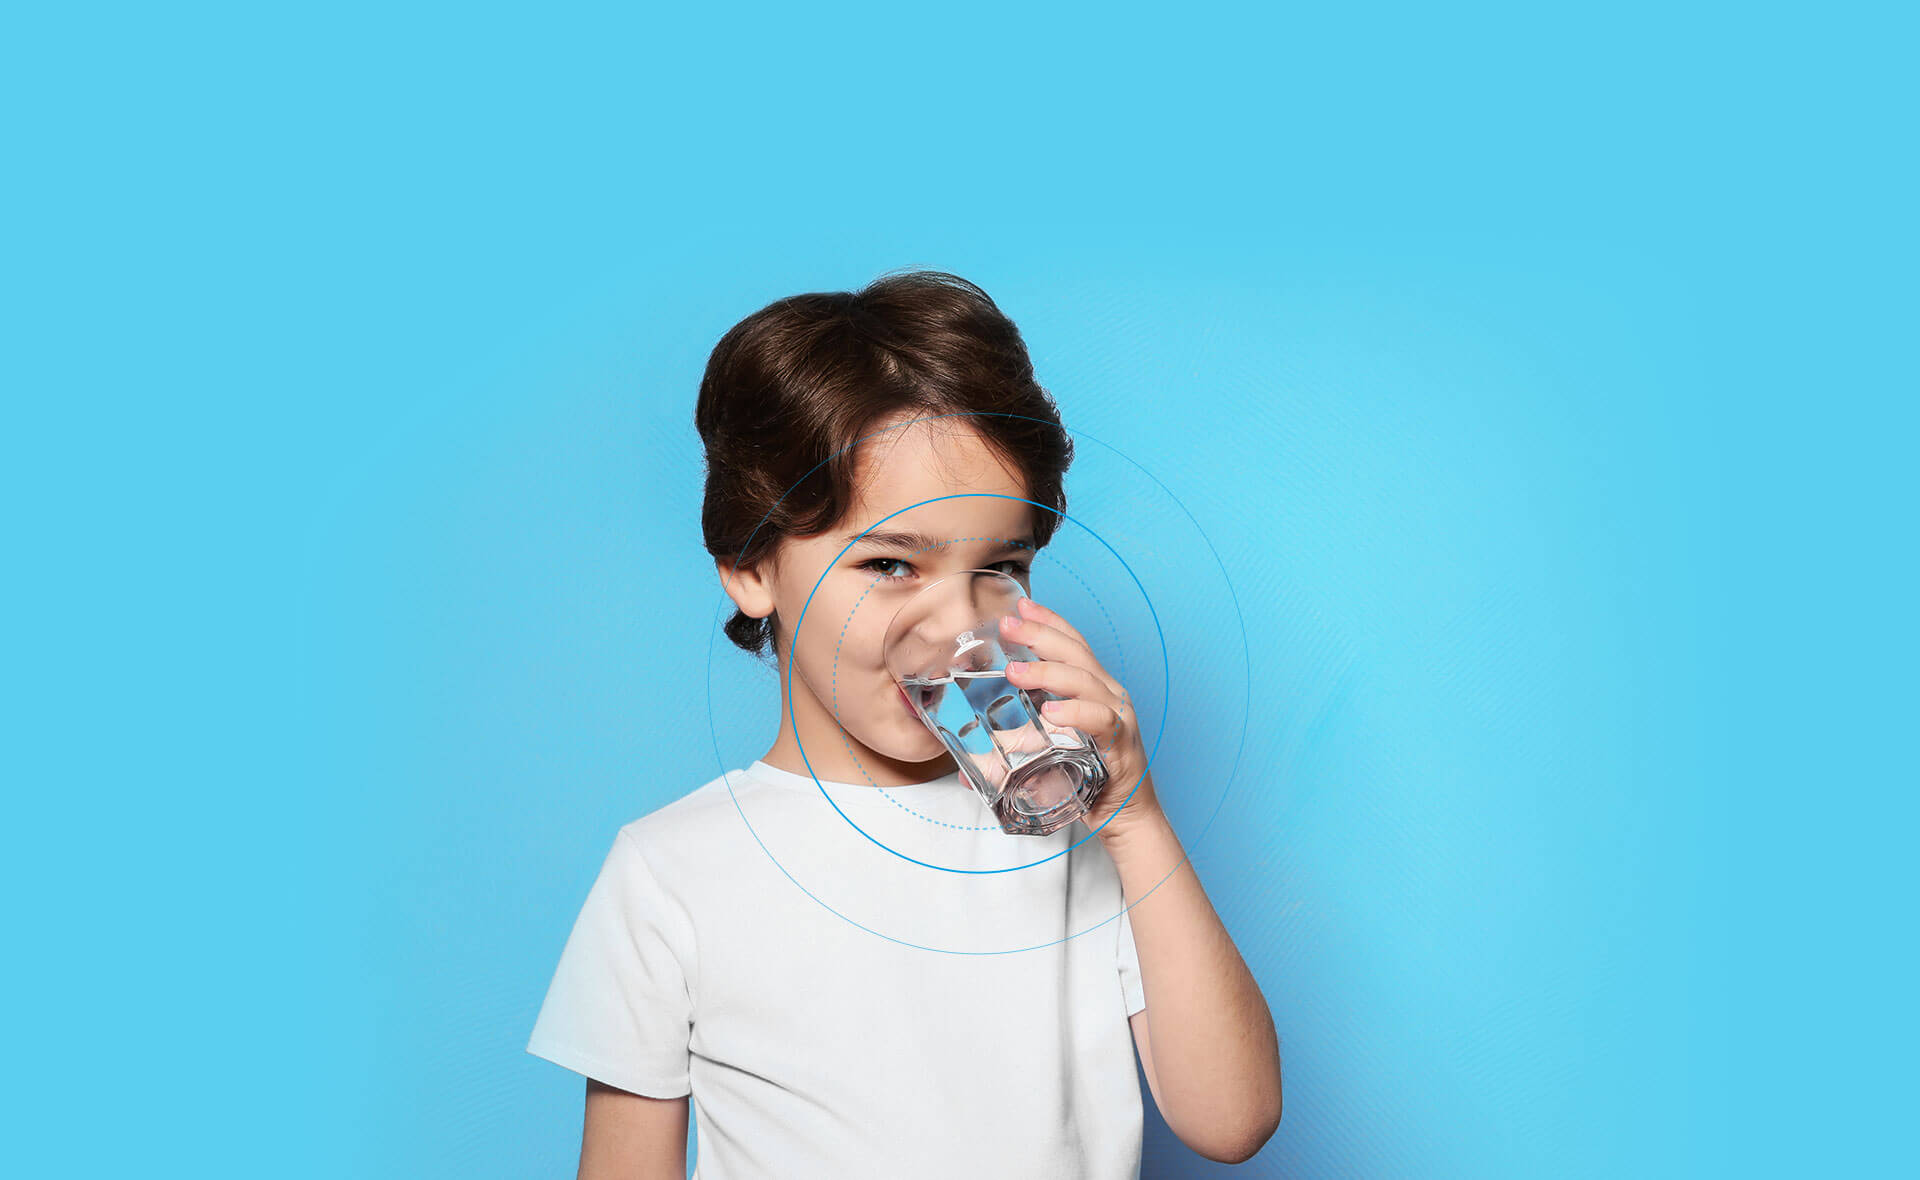 Kid drinks 2042 Water